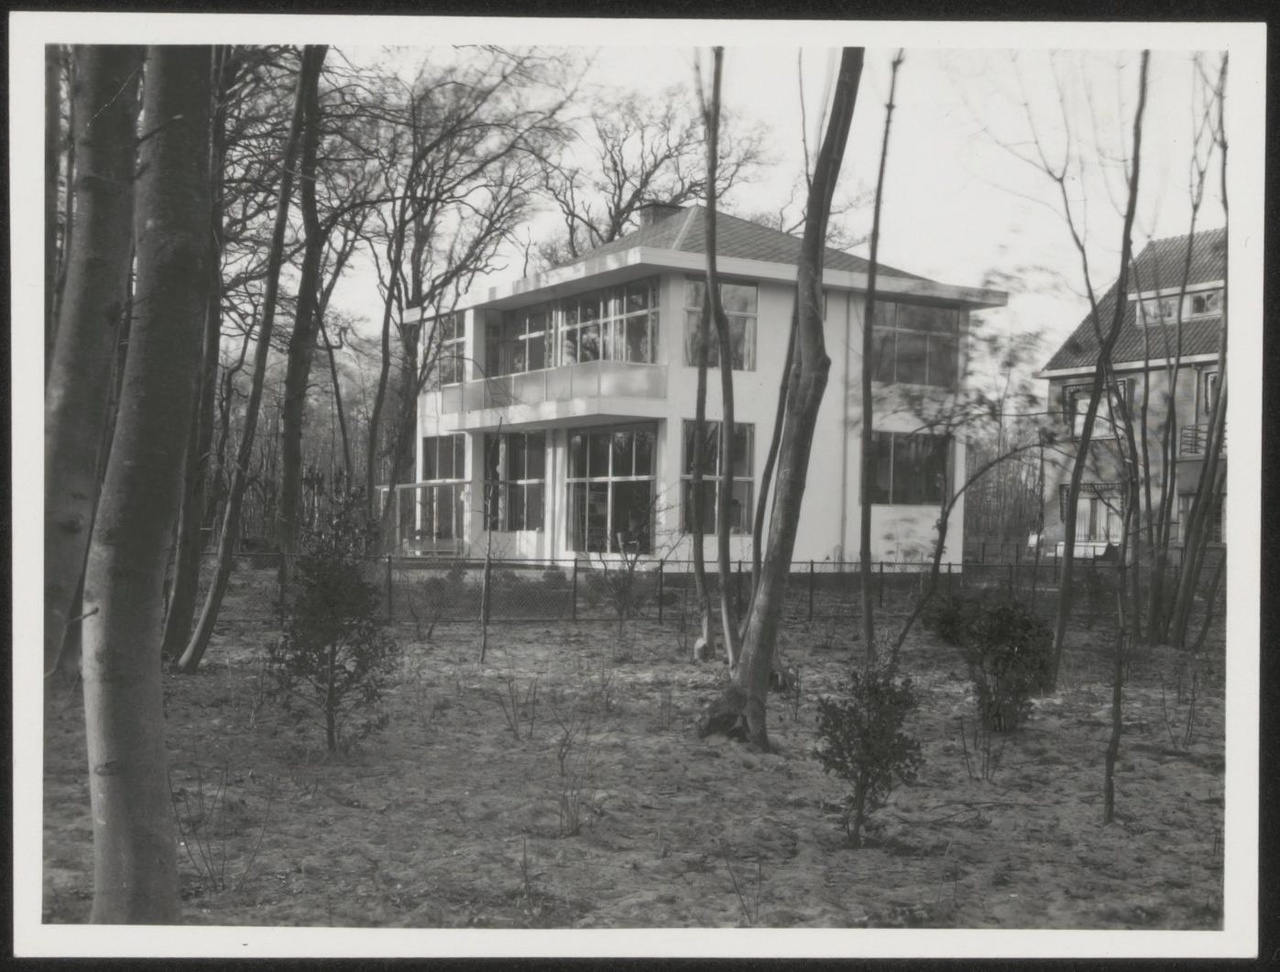 Afbeelding van woning Hillebrand, ca.1935, tuinkant hoek aan de straatzijde, van iets verderaf